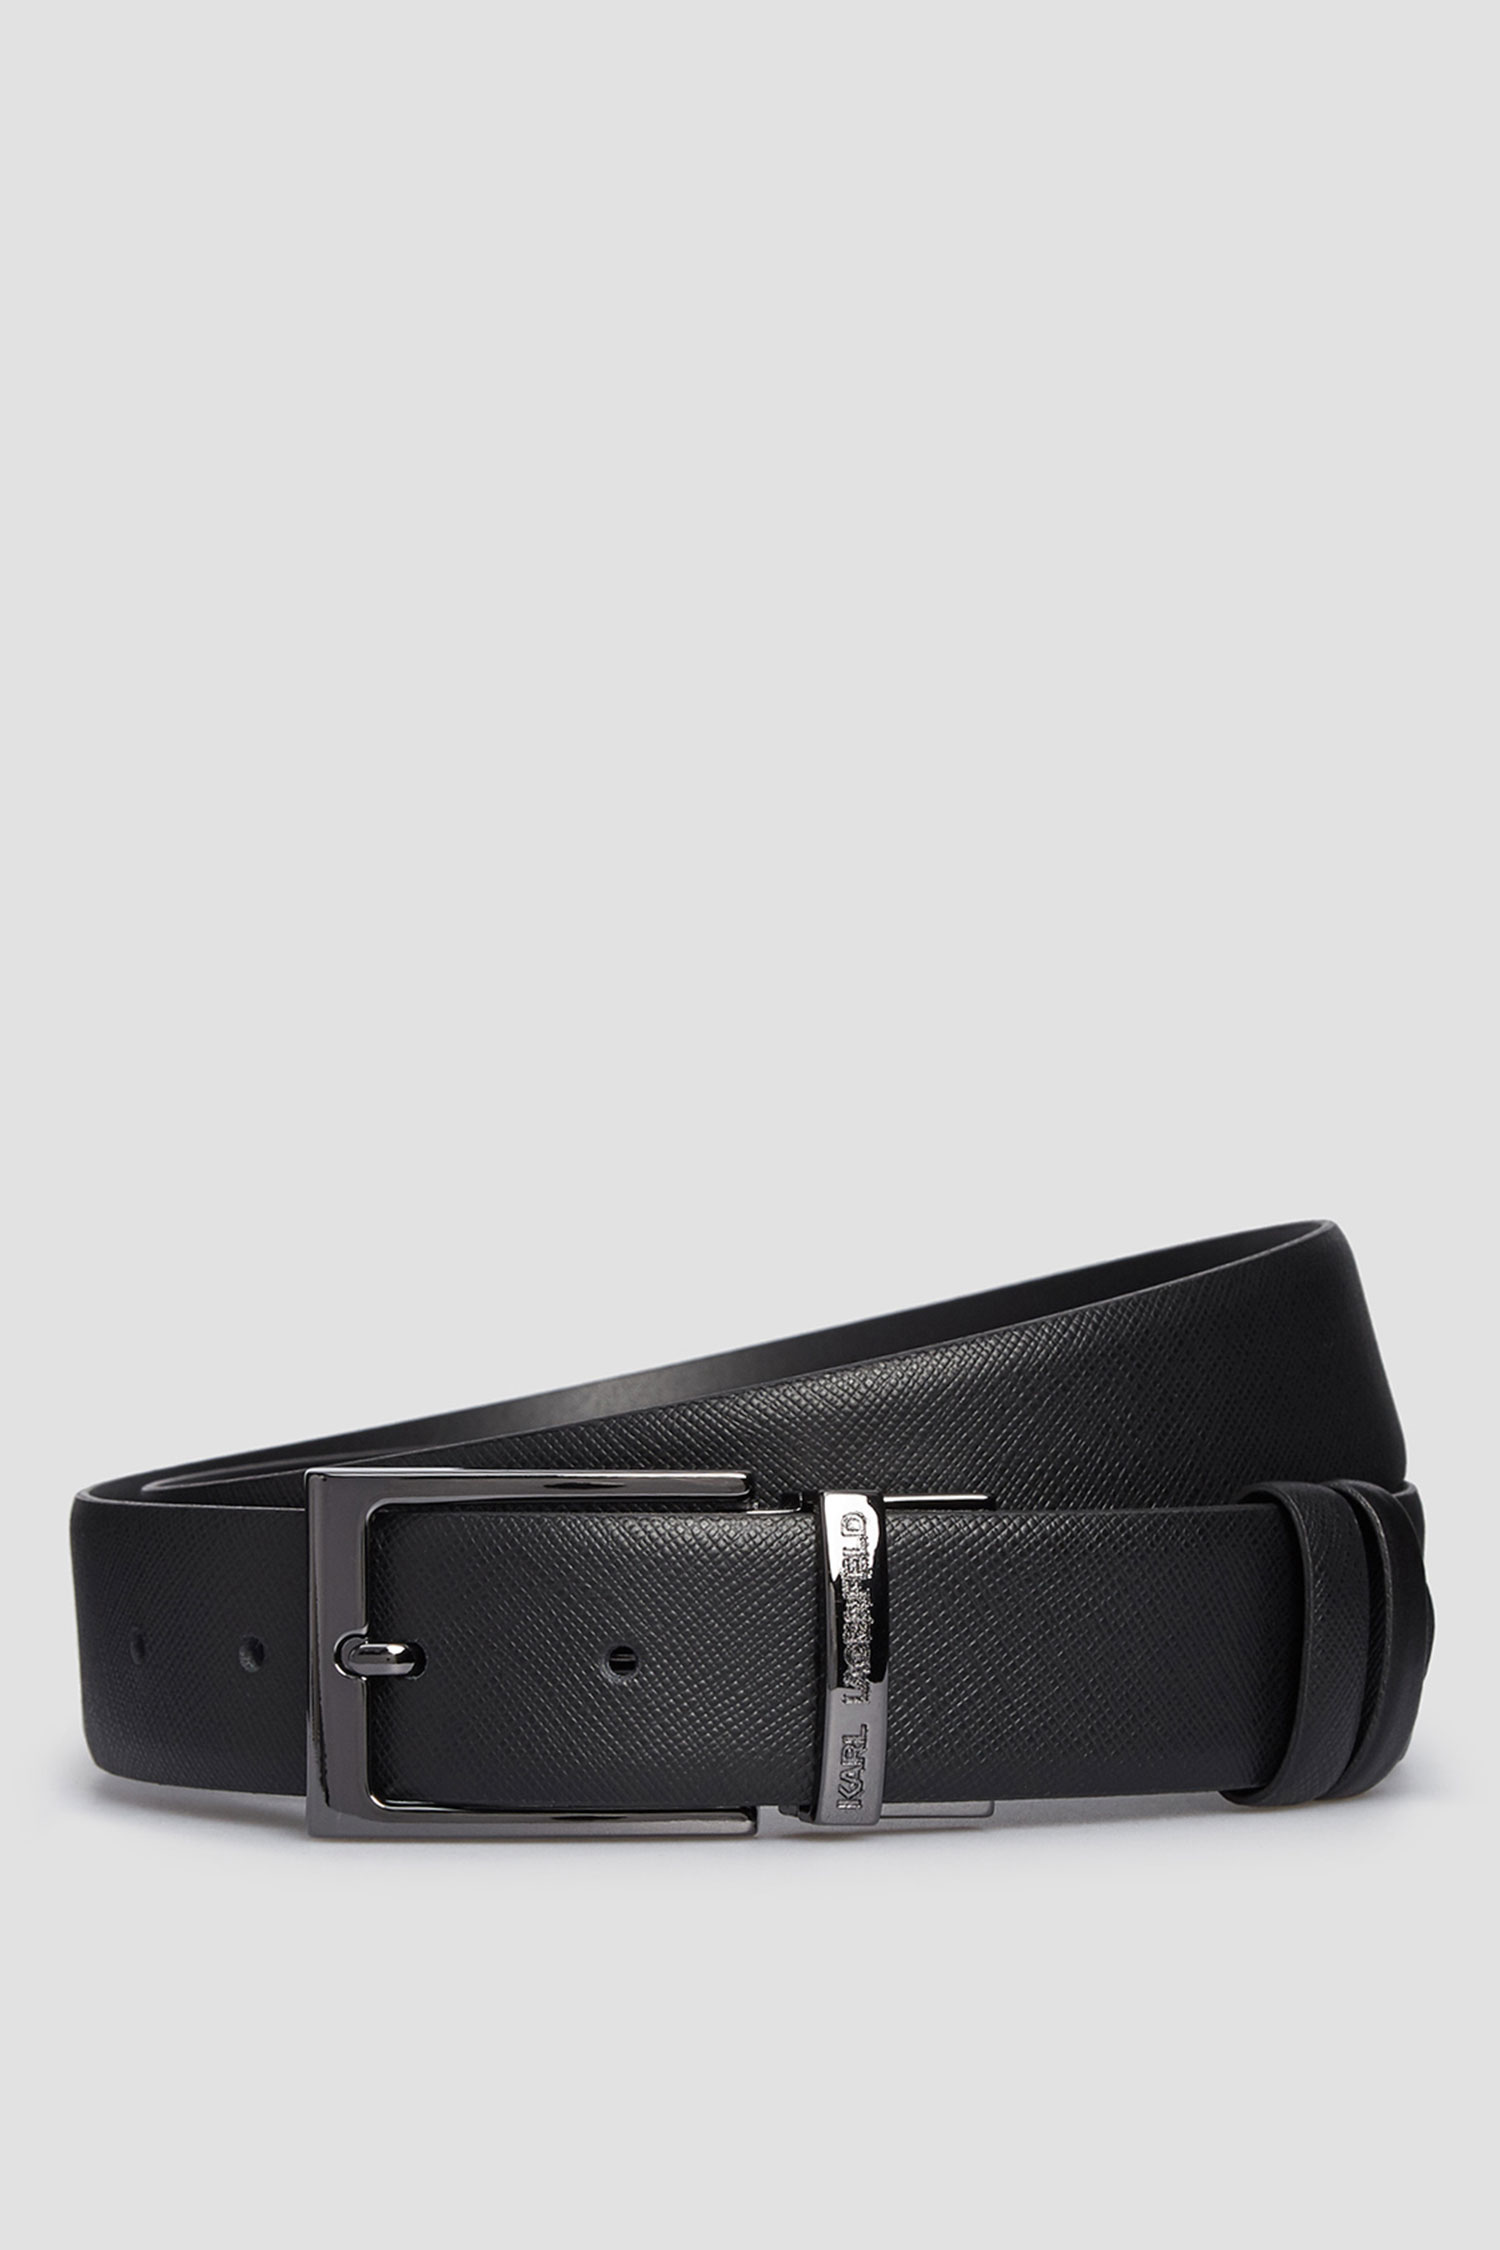 Мужской черный кожаный двухсторонний ремень Karl Lagerfeld 502453.815300;990